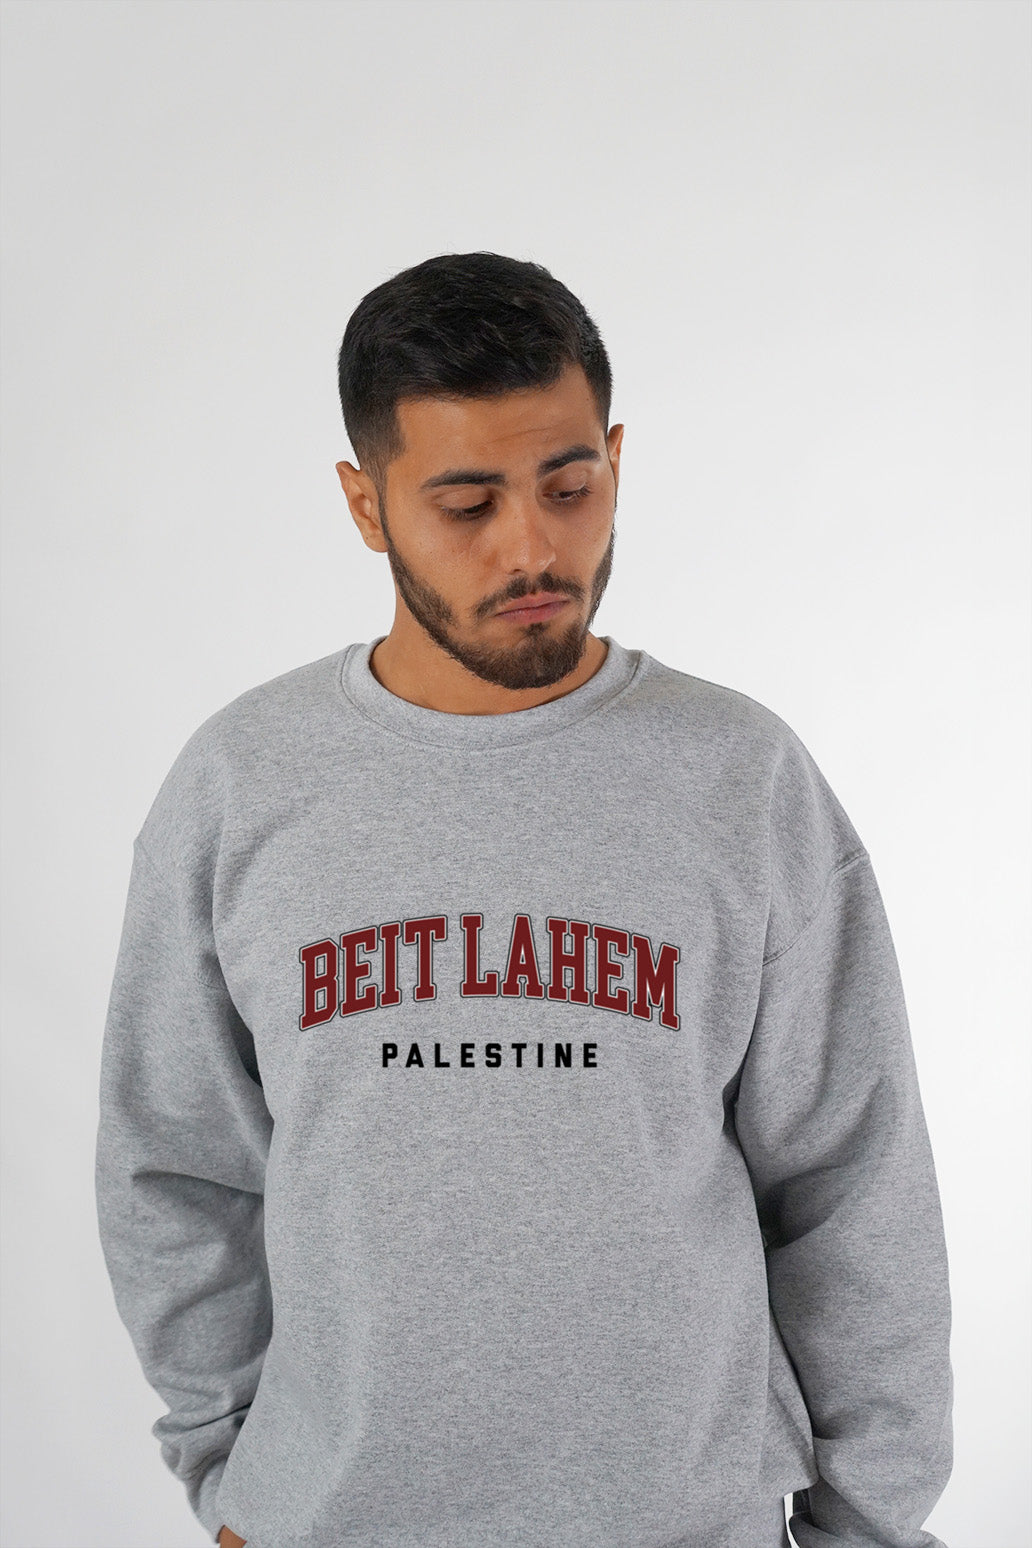 Beit Lahem, Palestine - Sweatshirt